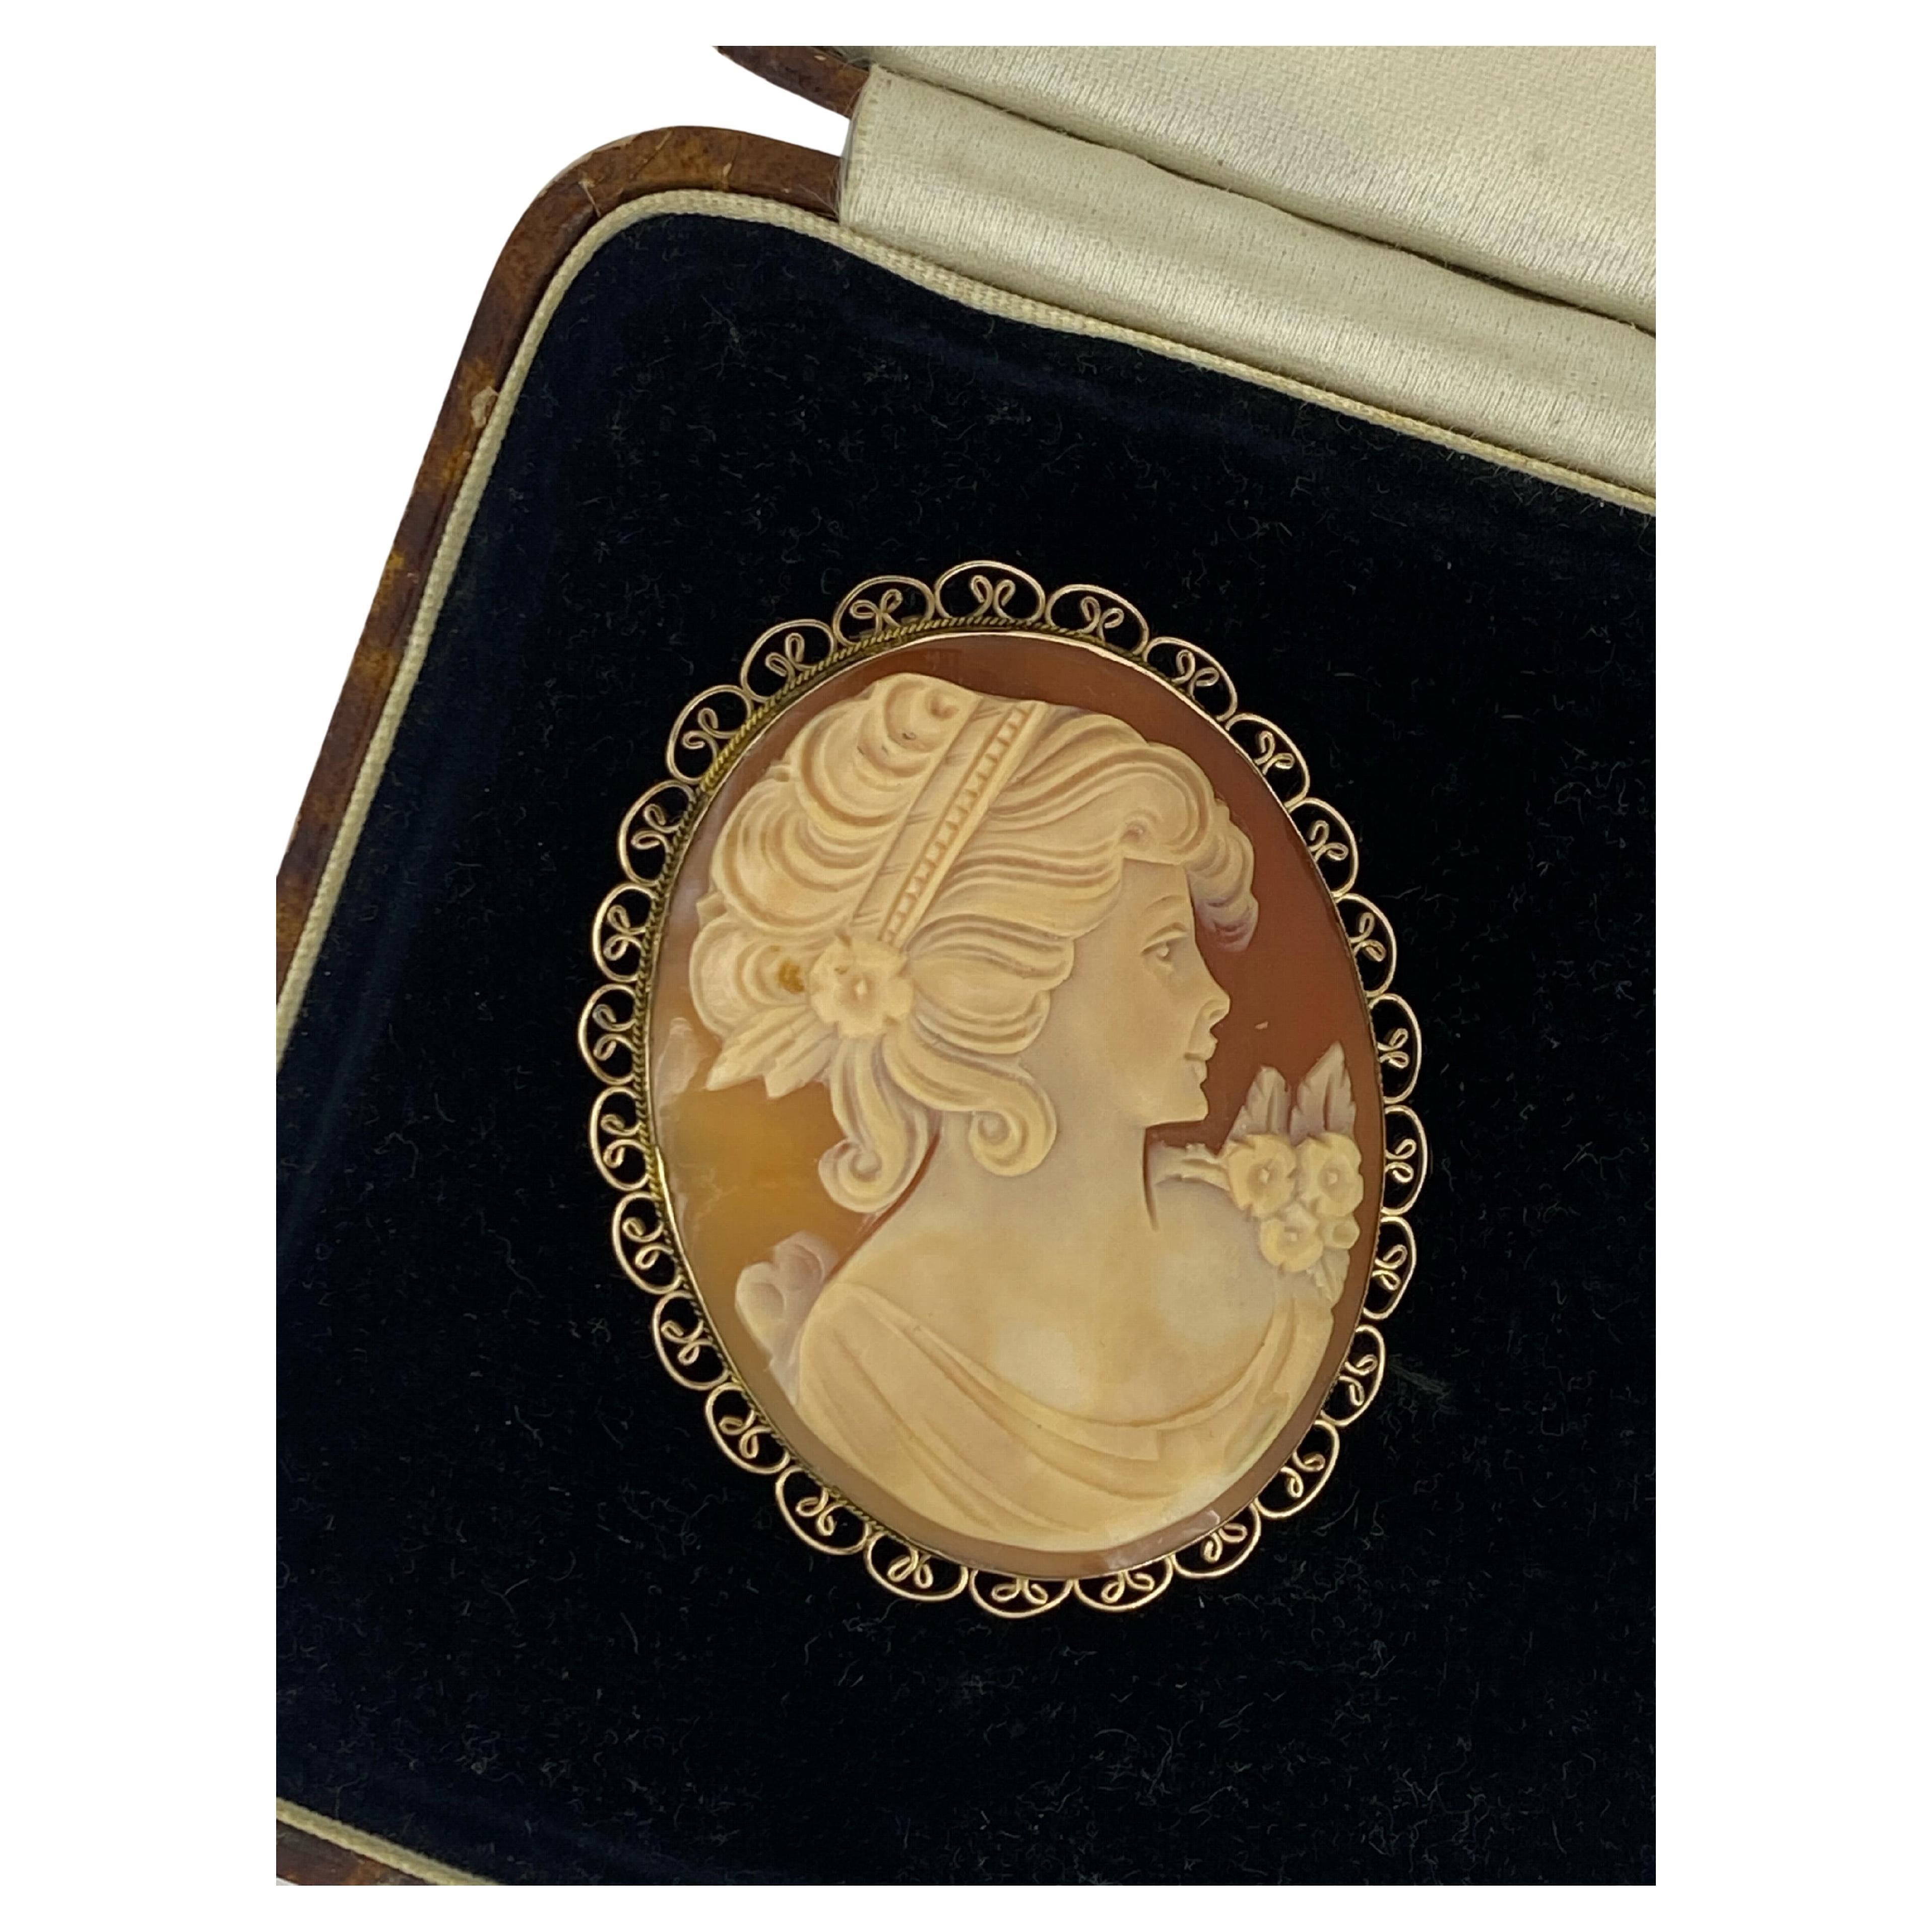 Pendentif broche camée italienne finement sculpté des années 1950 en or 9 carats